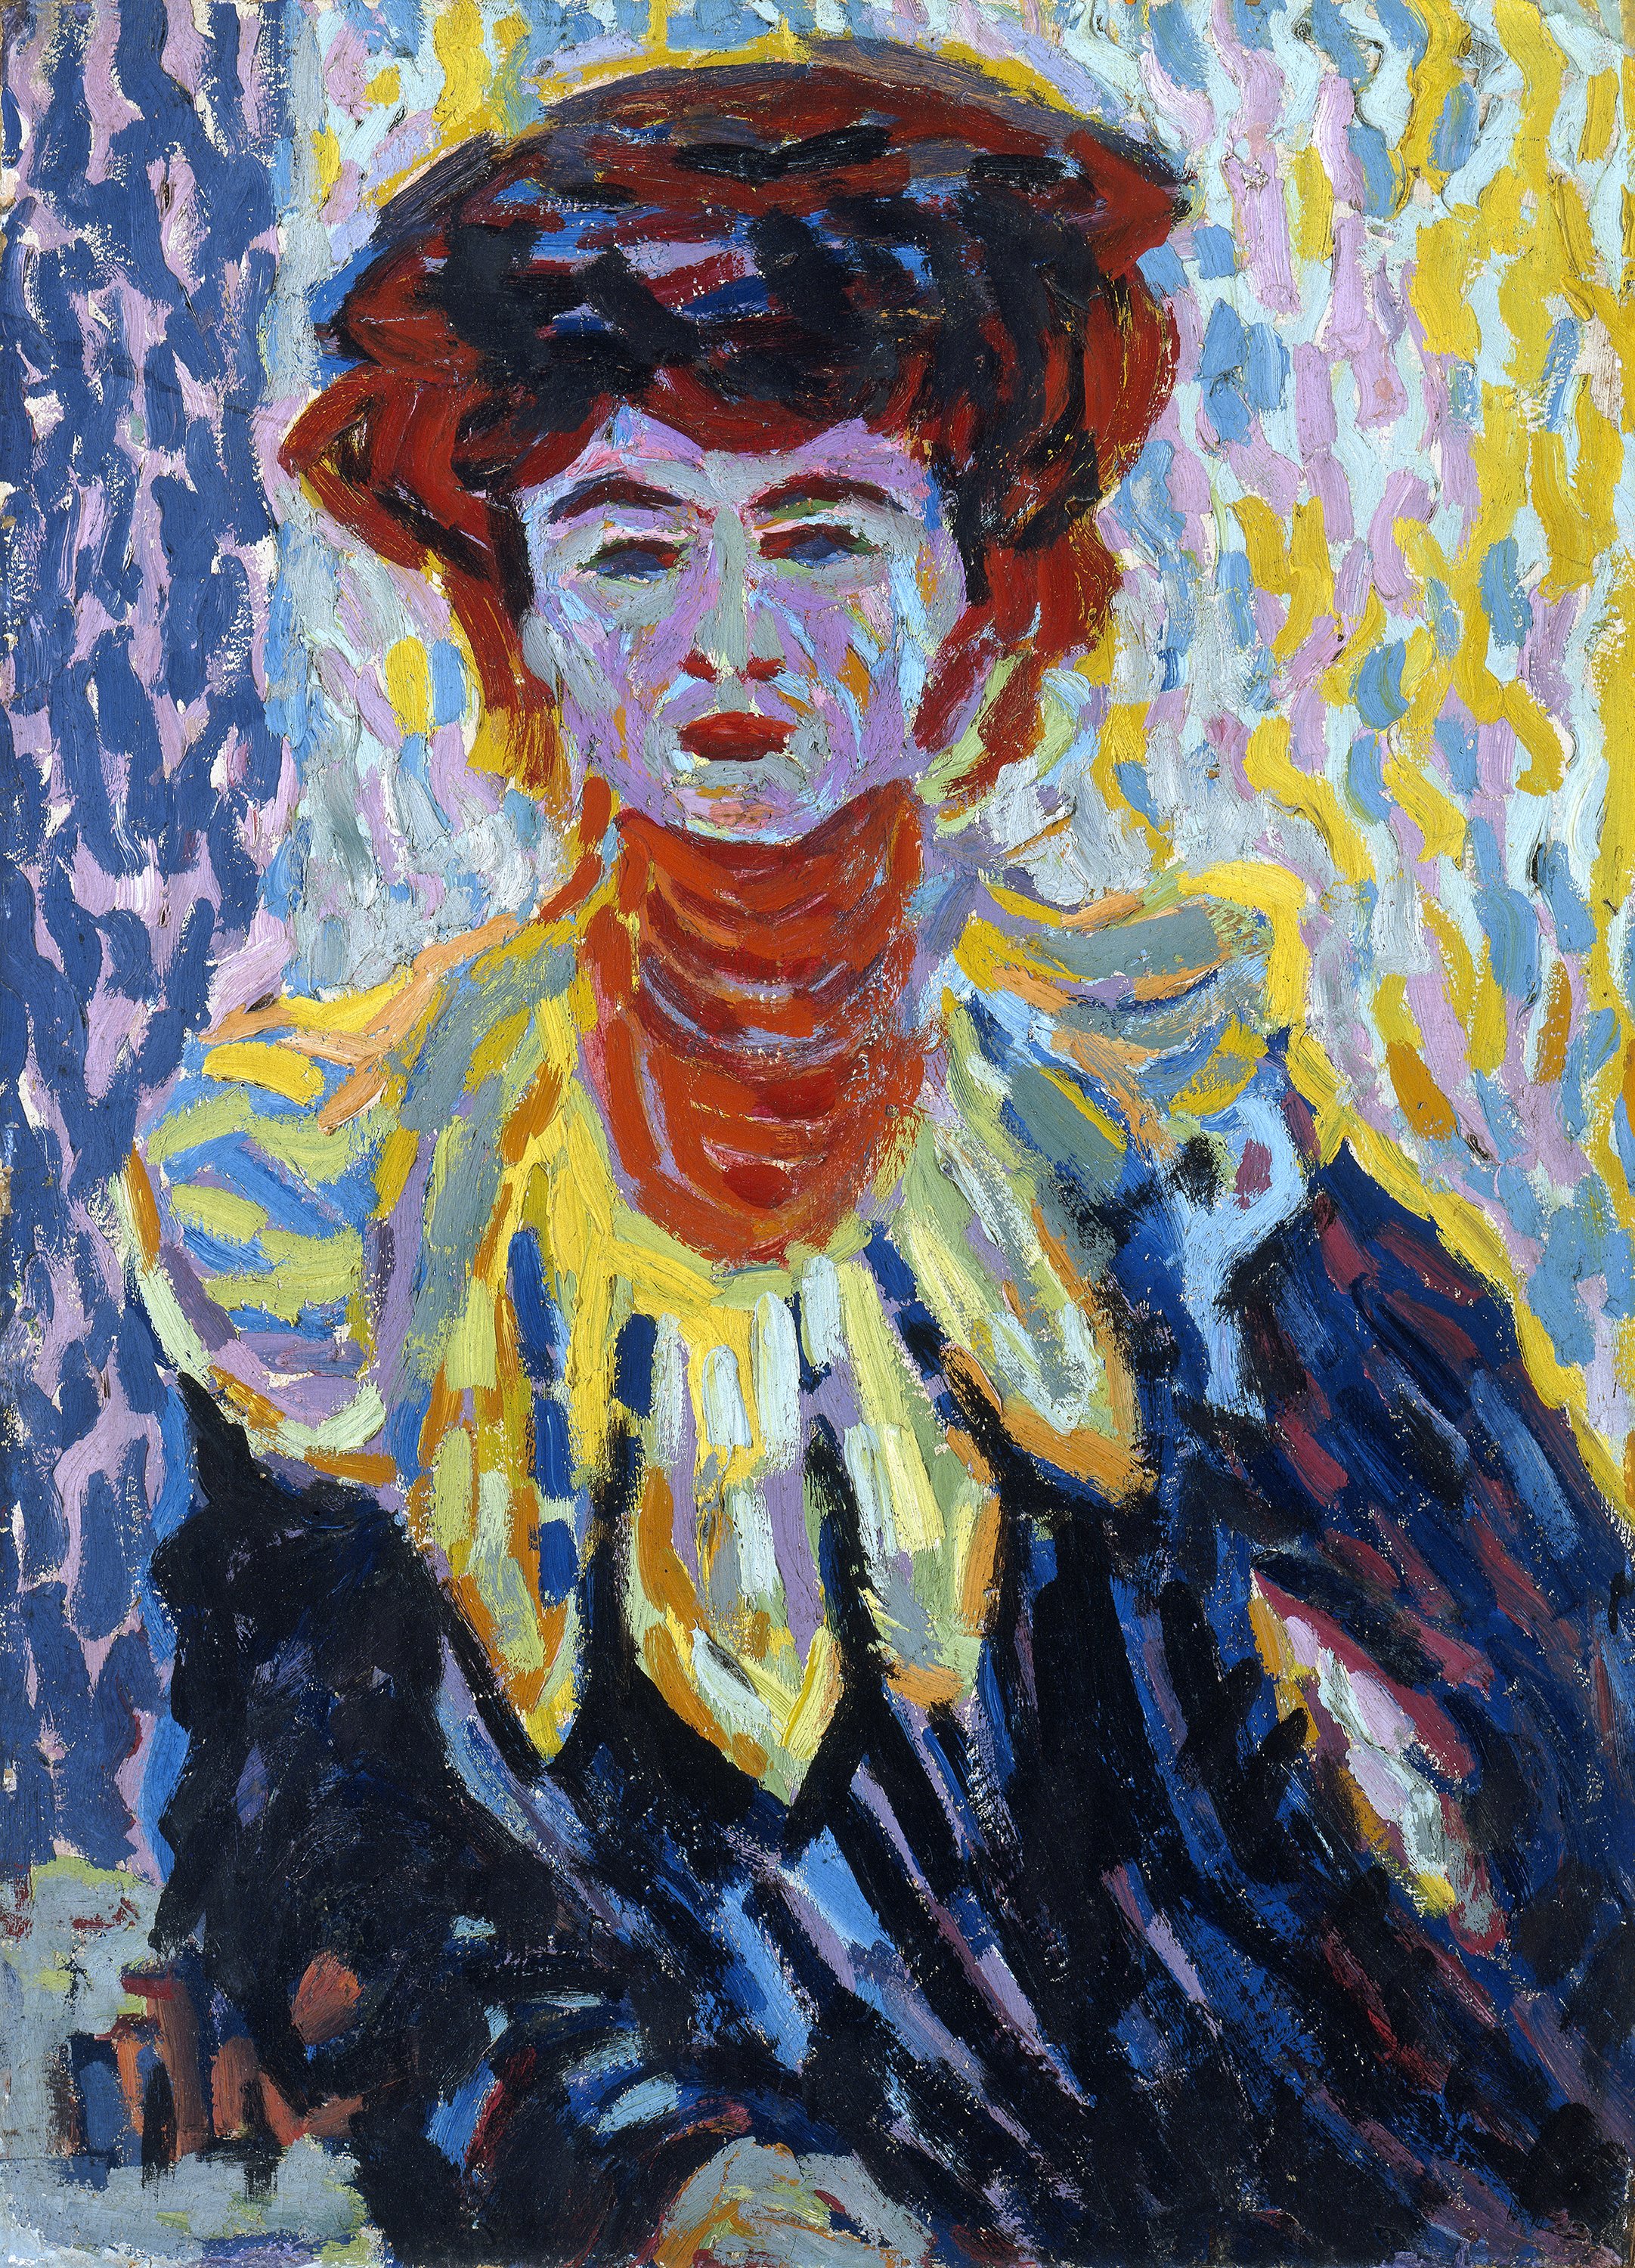 Doris con cuello alto. Ernst Ludwig Kirchner